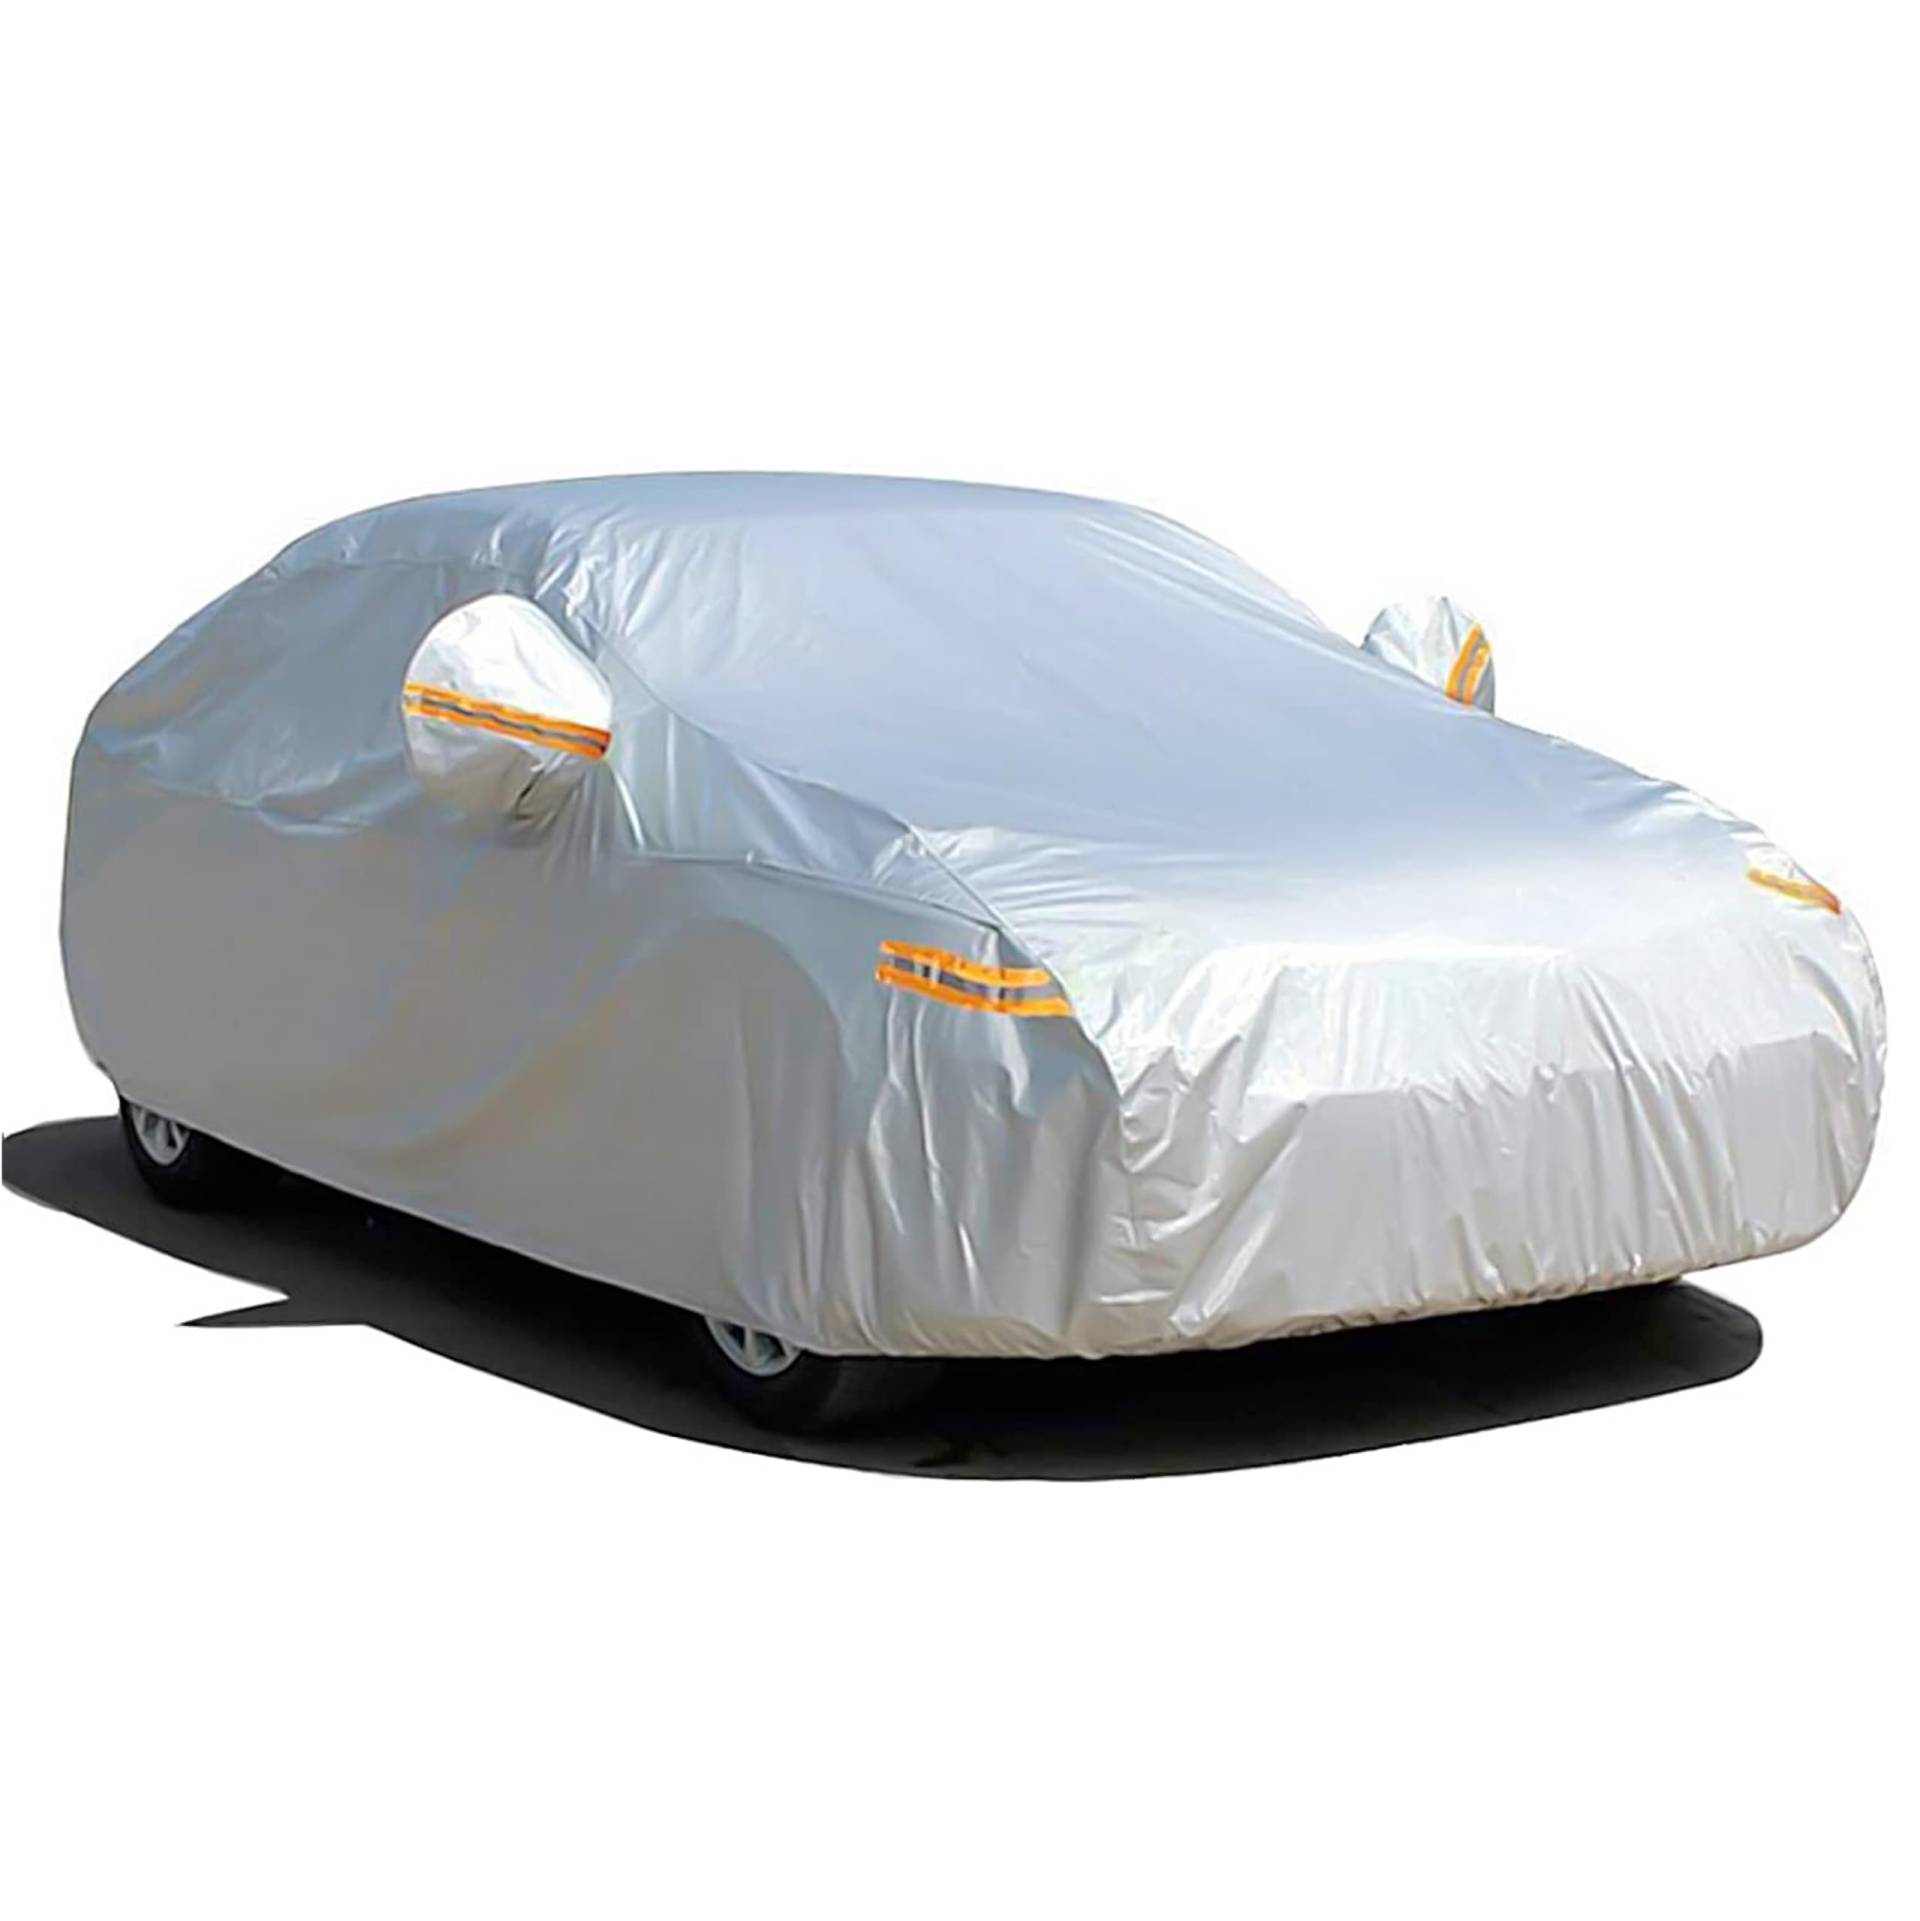 Universale Autoschutzhülle - Autoabdeckung - wasserdichte Autoplane für PKW/KFZ – Car Cover in Silber für umfassenden Schutz von POWR CAR